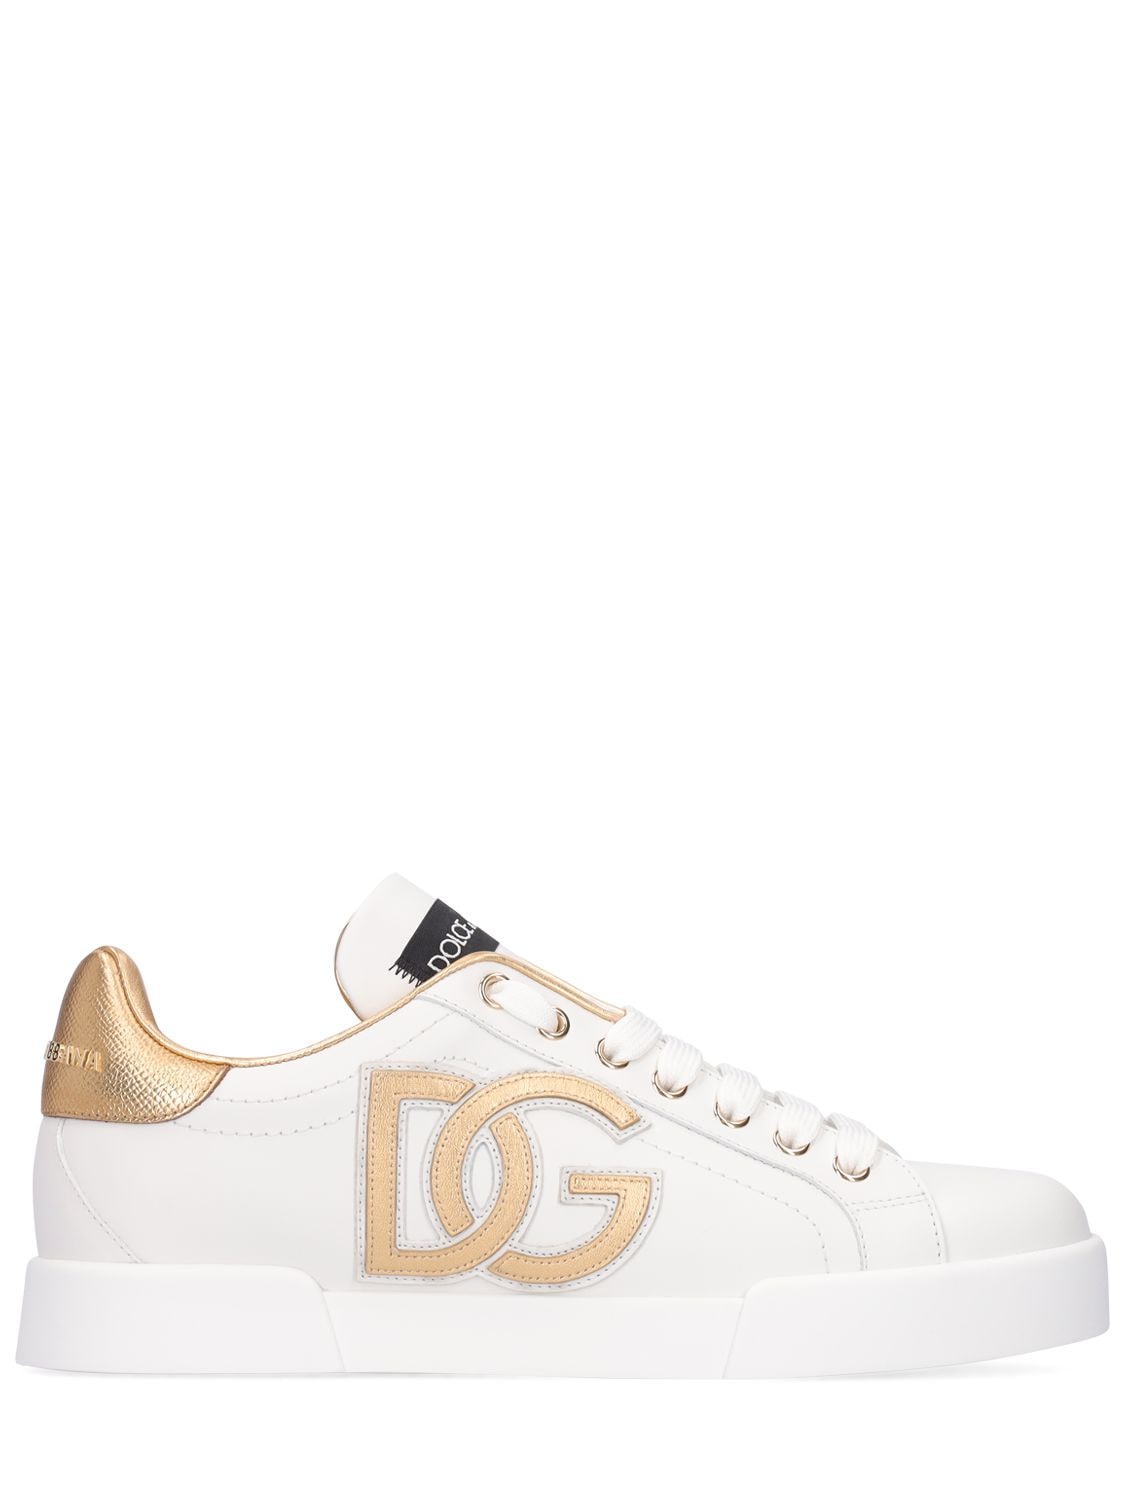 Shop Dolce & Gabbana 20mm Portofino Leather Sneakers In White,gold